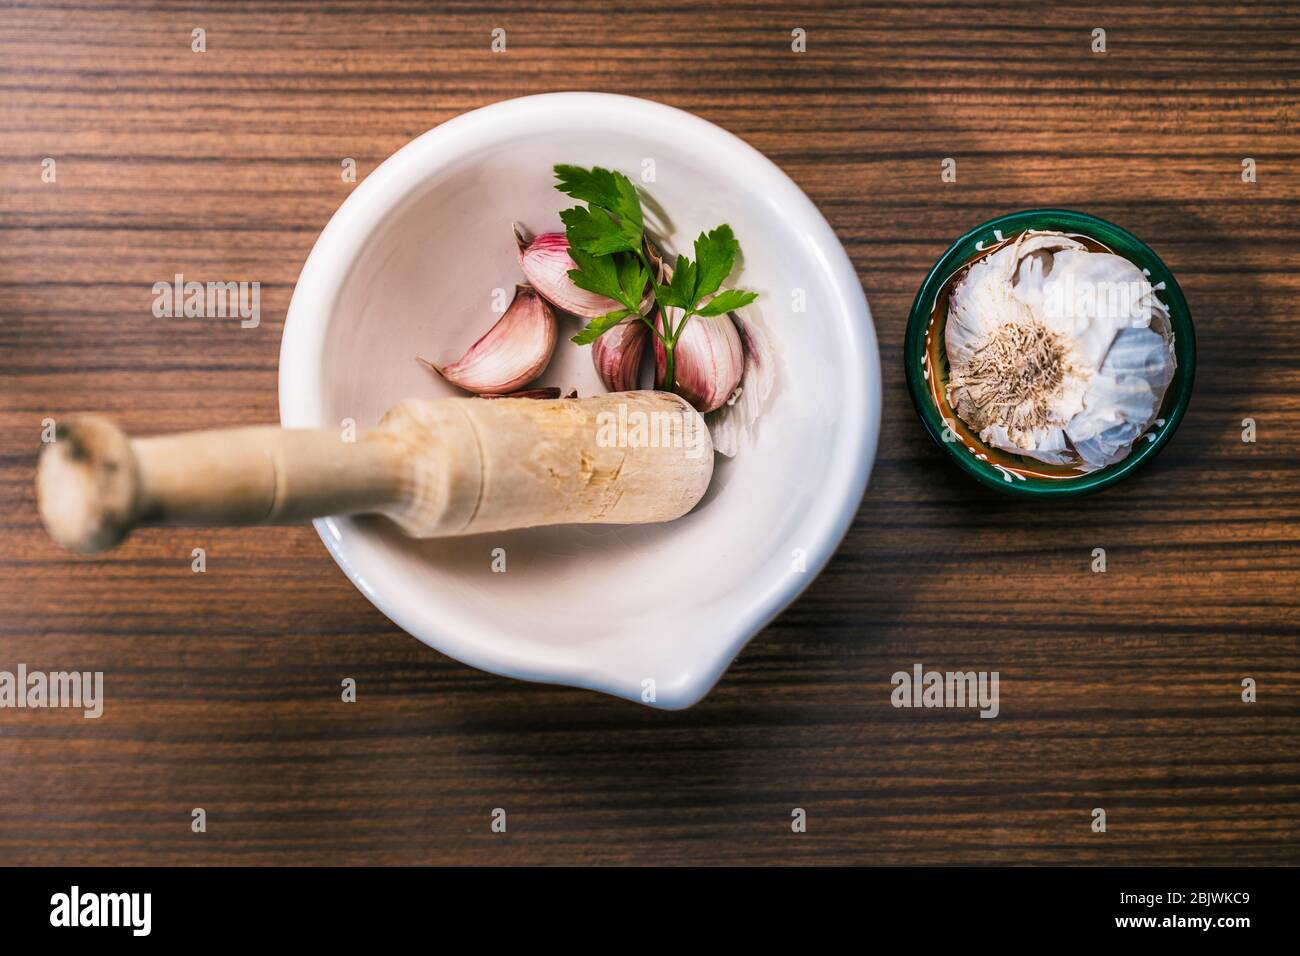 Preparare una ricetta per preparare gli aioli in modo tradizionale e casalingo. Ingredienti e utensili per preparare l'olio d'aglio. Spicchi d'aglio diversi, prezzemolo l Foto Stock